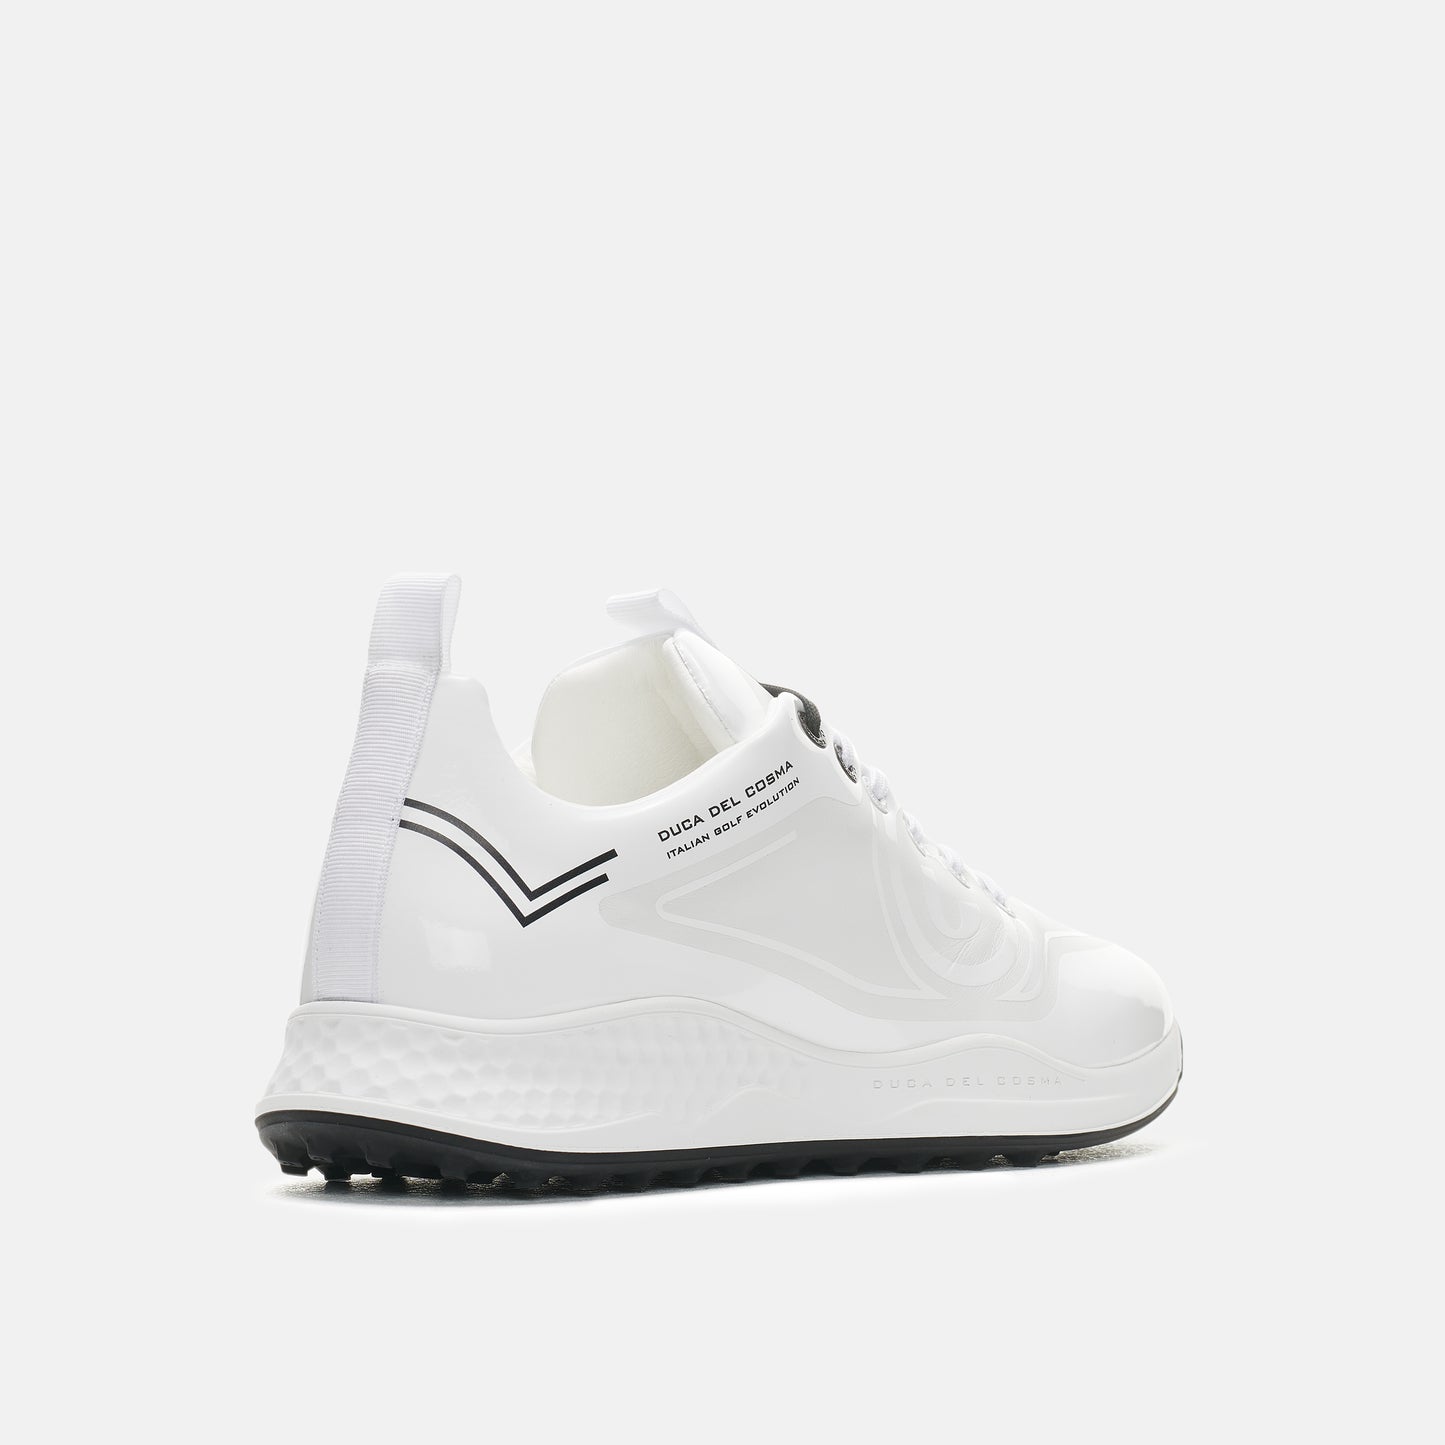 Wildcat White waterproof women's golf shoe the best selling golf shoe from duca del cosma